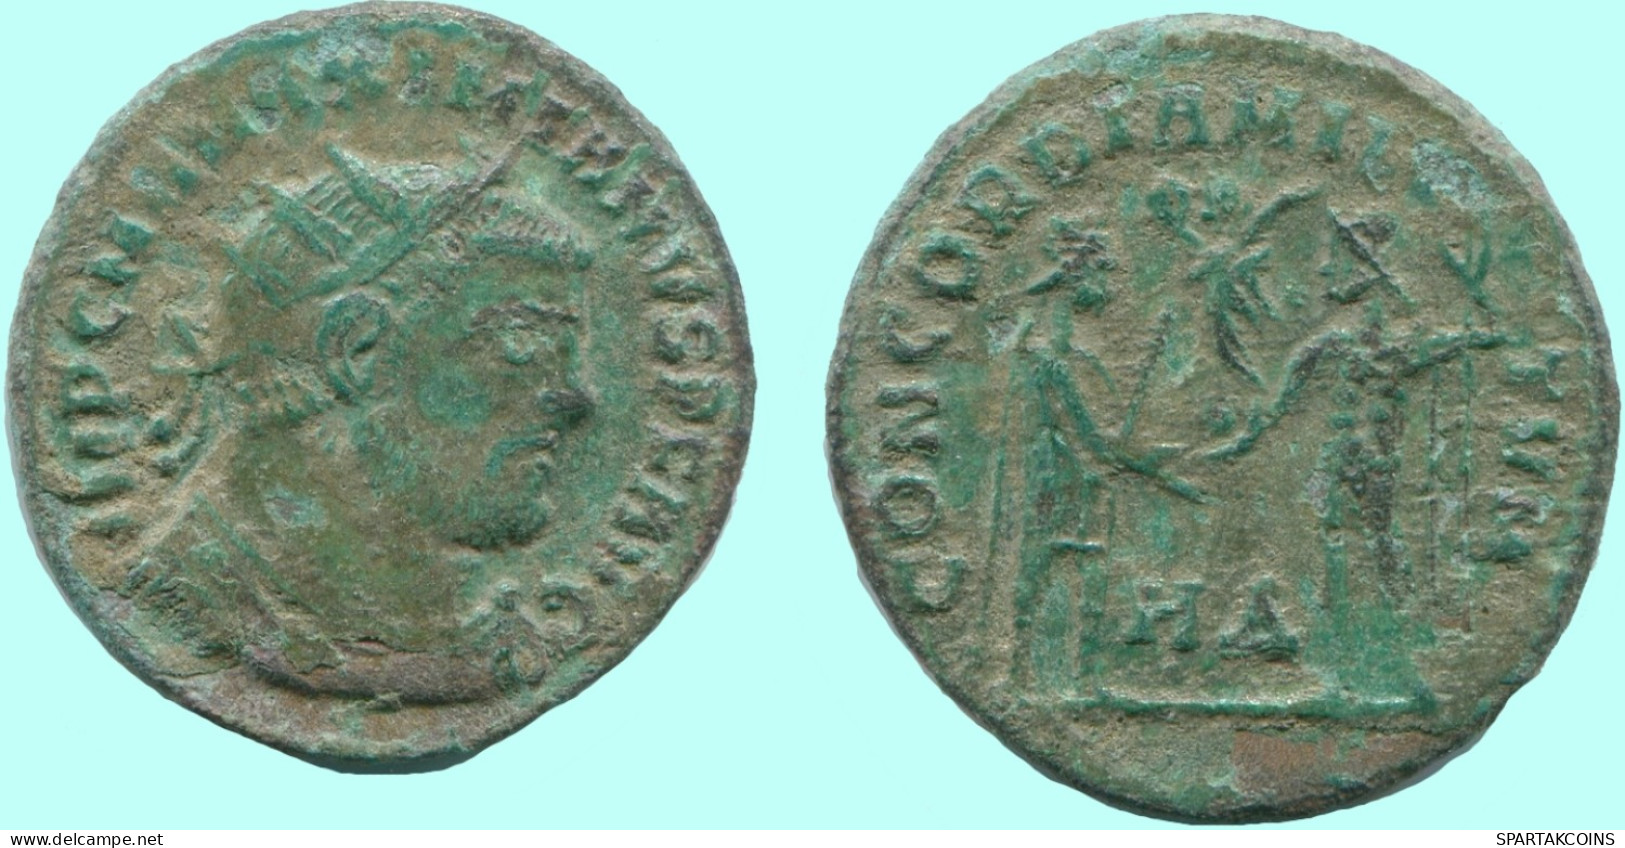 MAXIMIANUS HERACLEA Mint AD 295-296 JUPITER & VICTORY 3.0g/20mm #ANC13058.17.E.A - La Tetrarchia E Costantino I Il Grande (284 / 307)